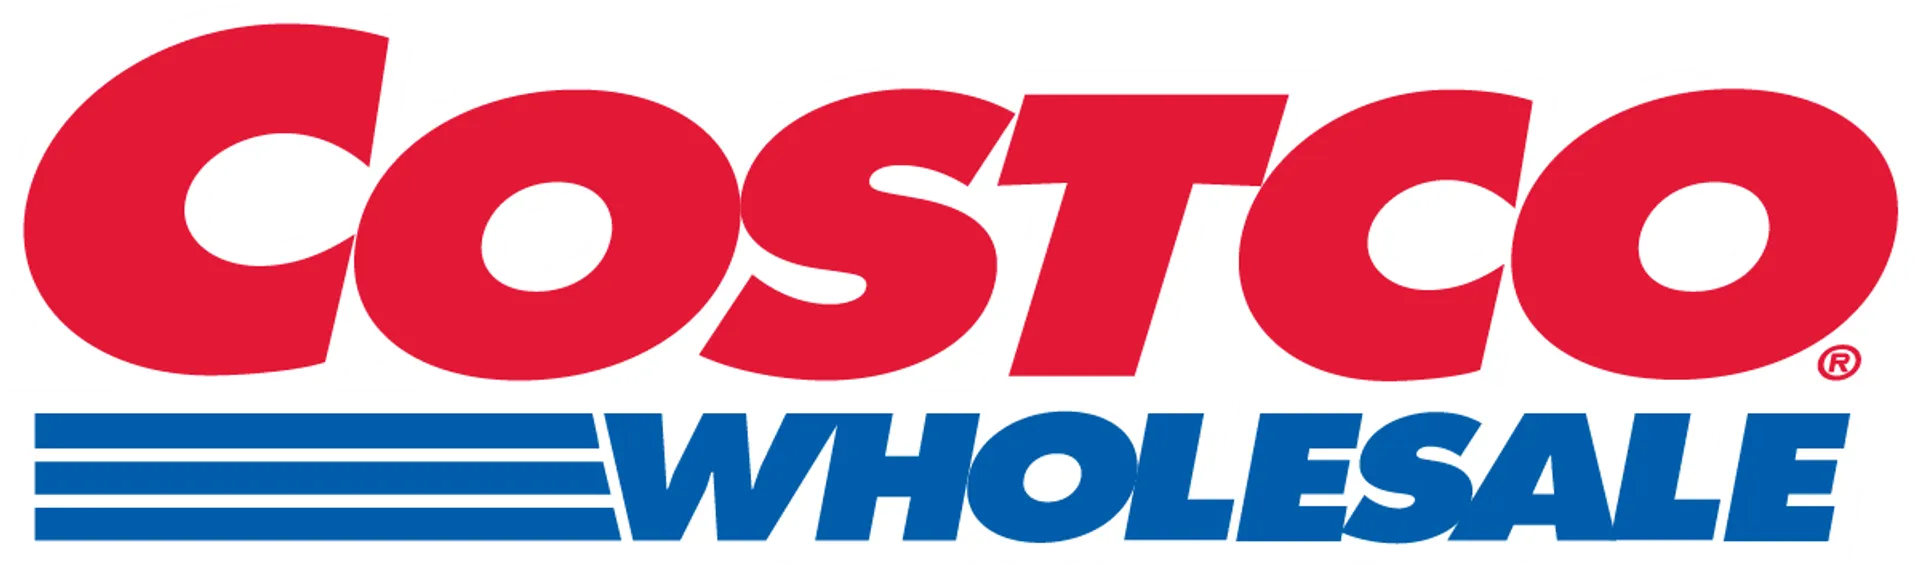 COSTCO logo